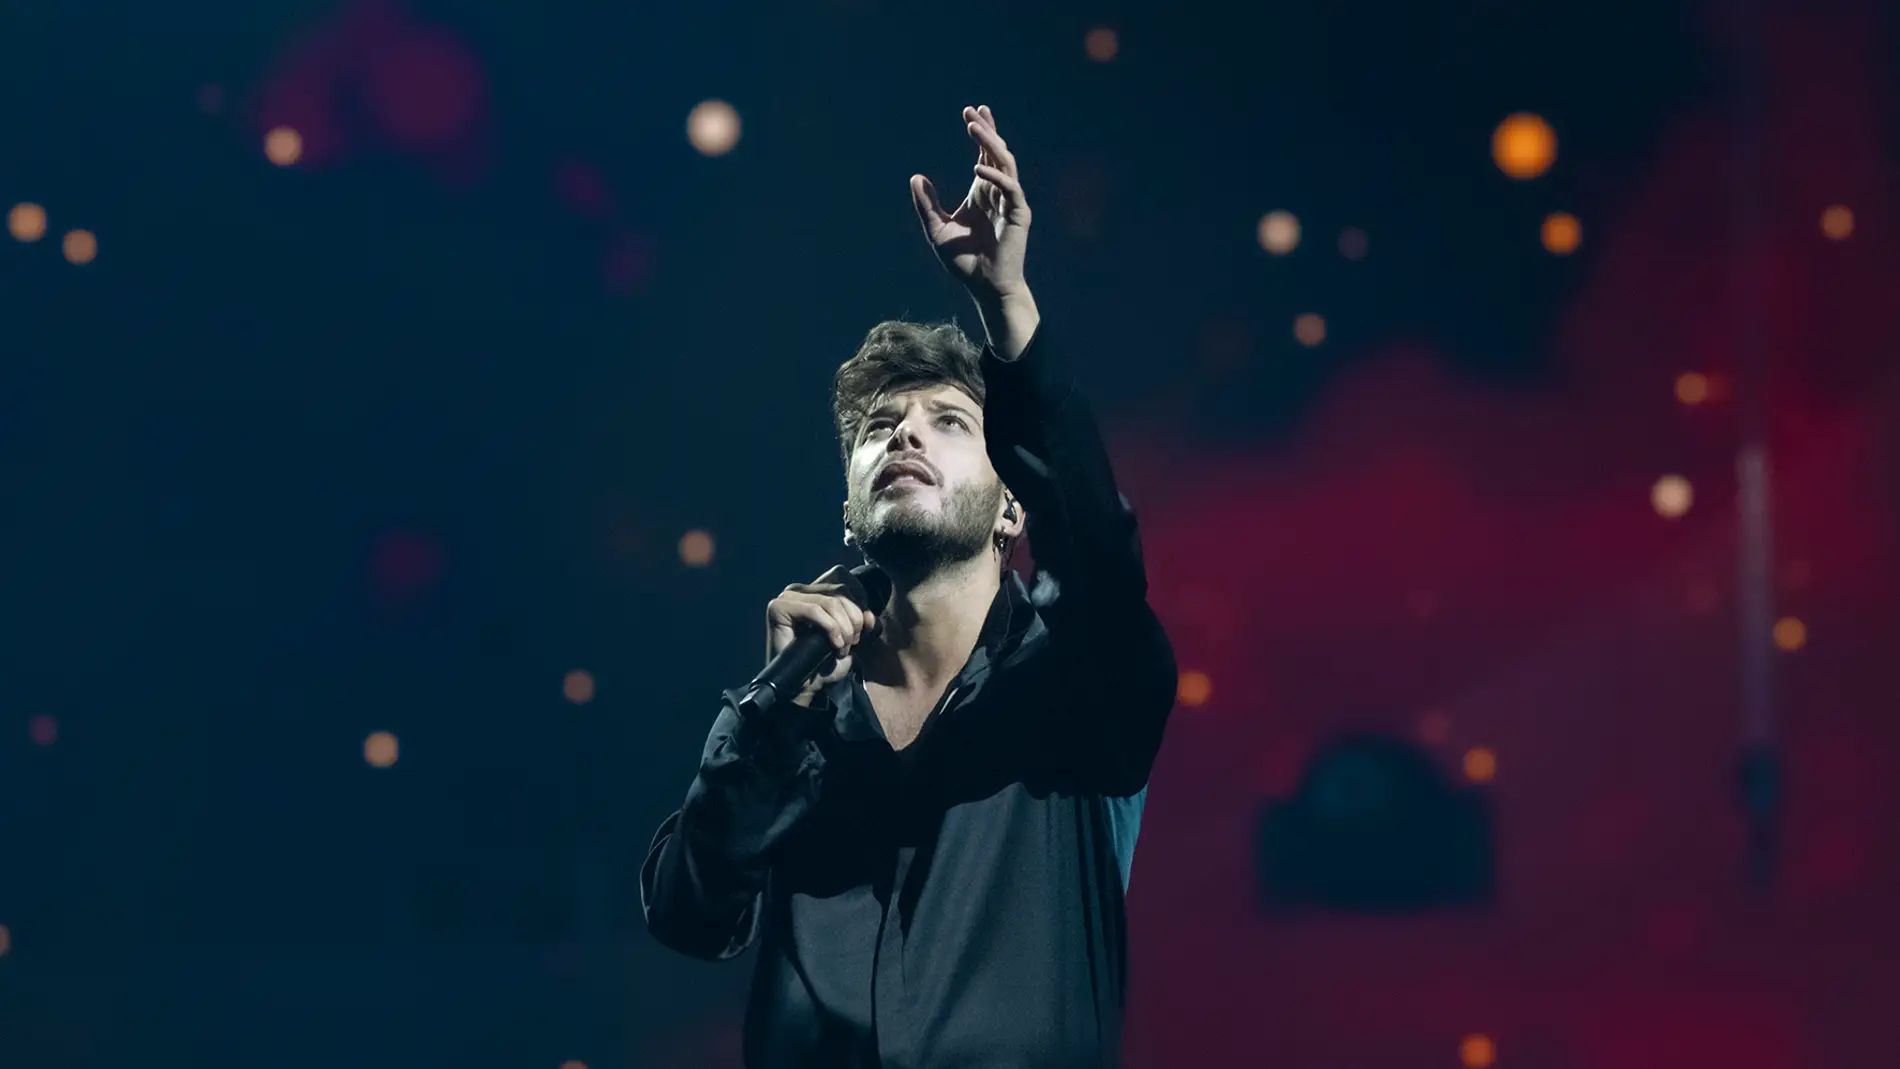 Este será el resultado de España y Blas Cantó en Eurovisión, según los pronósticos